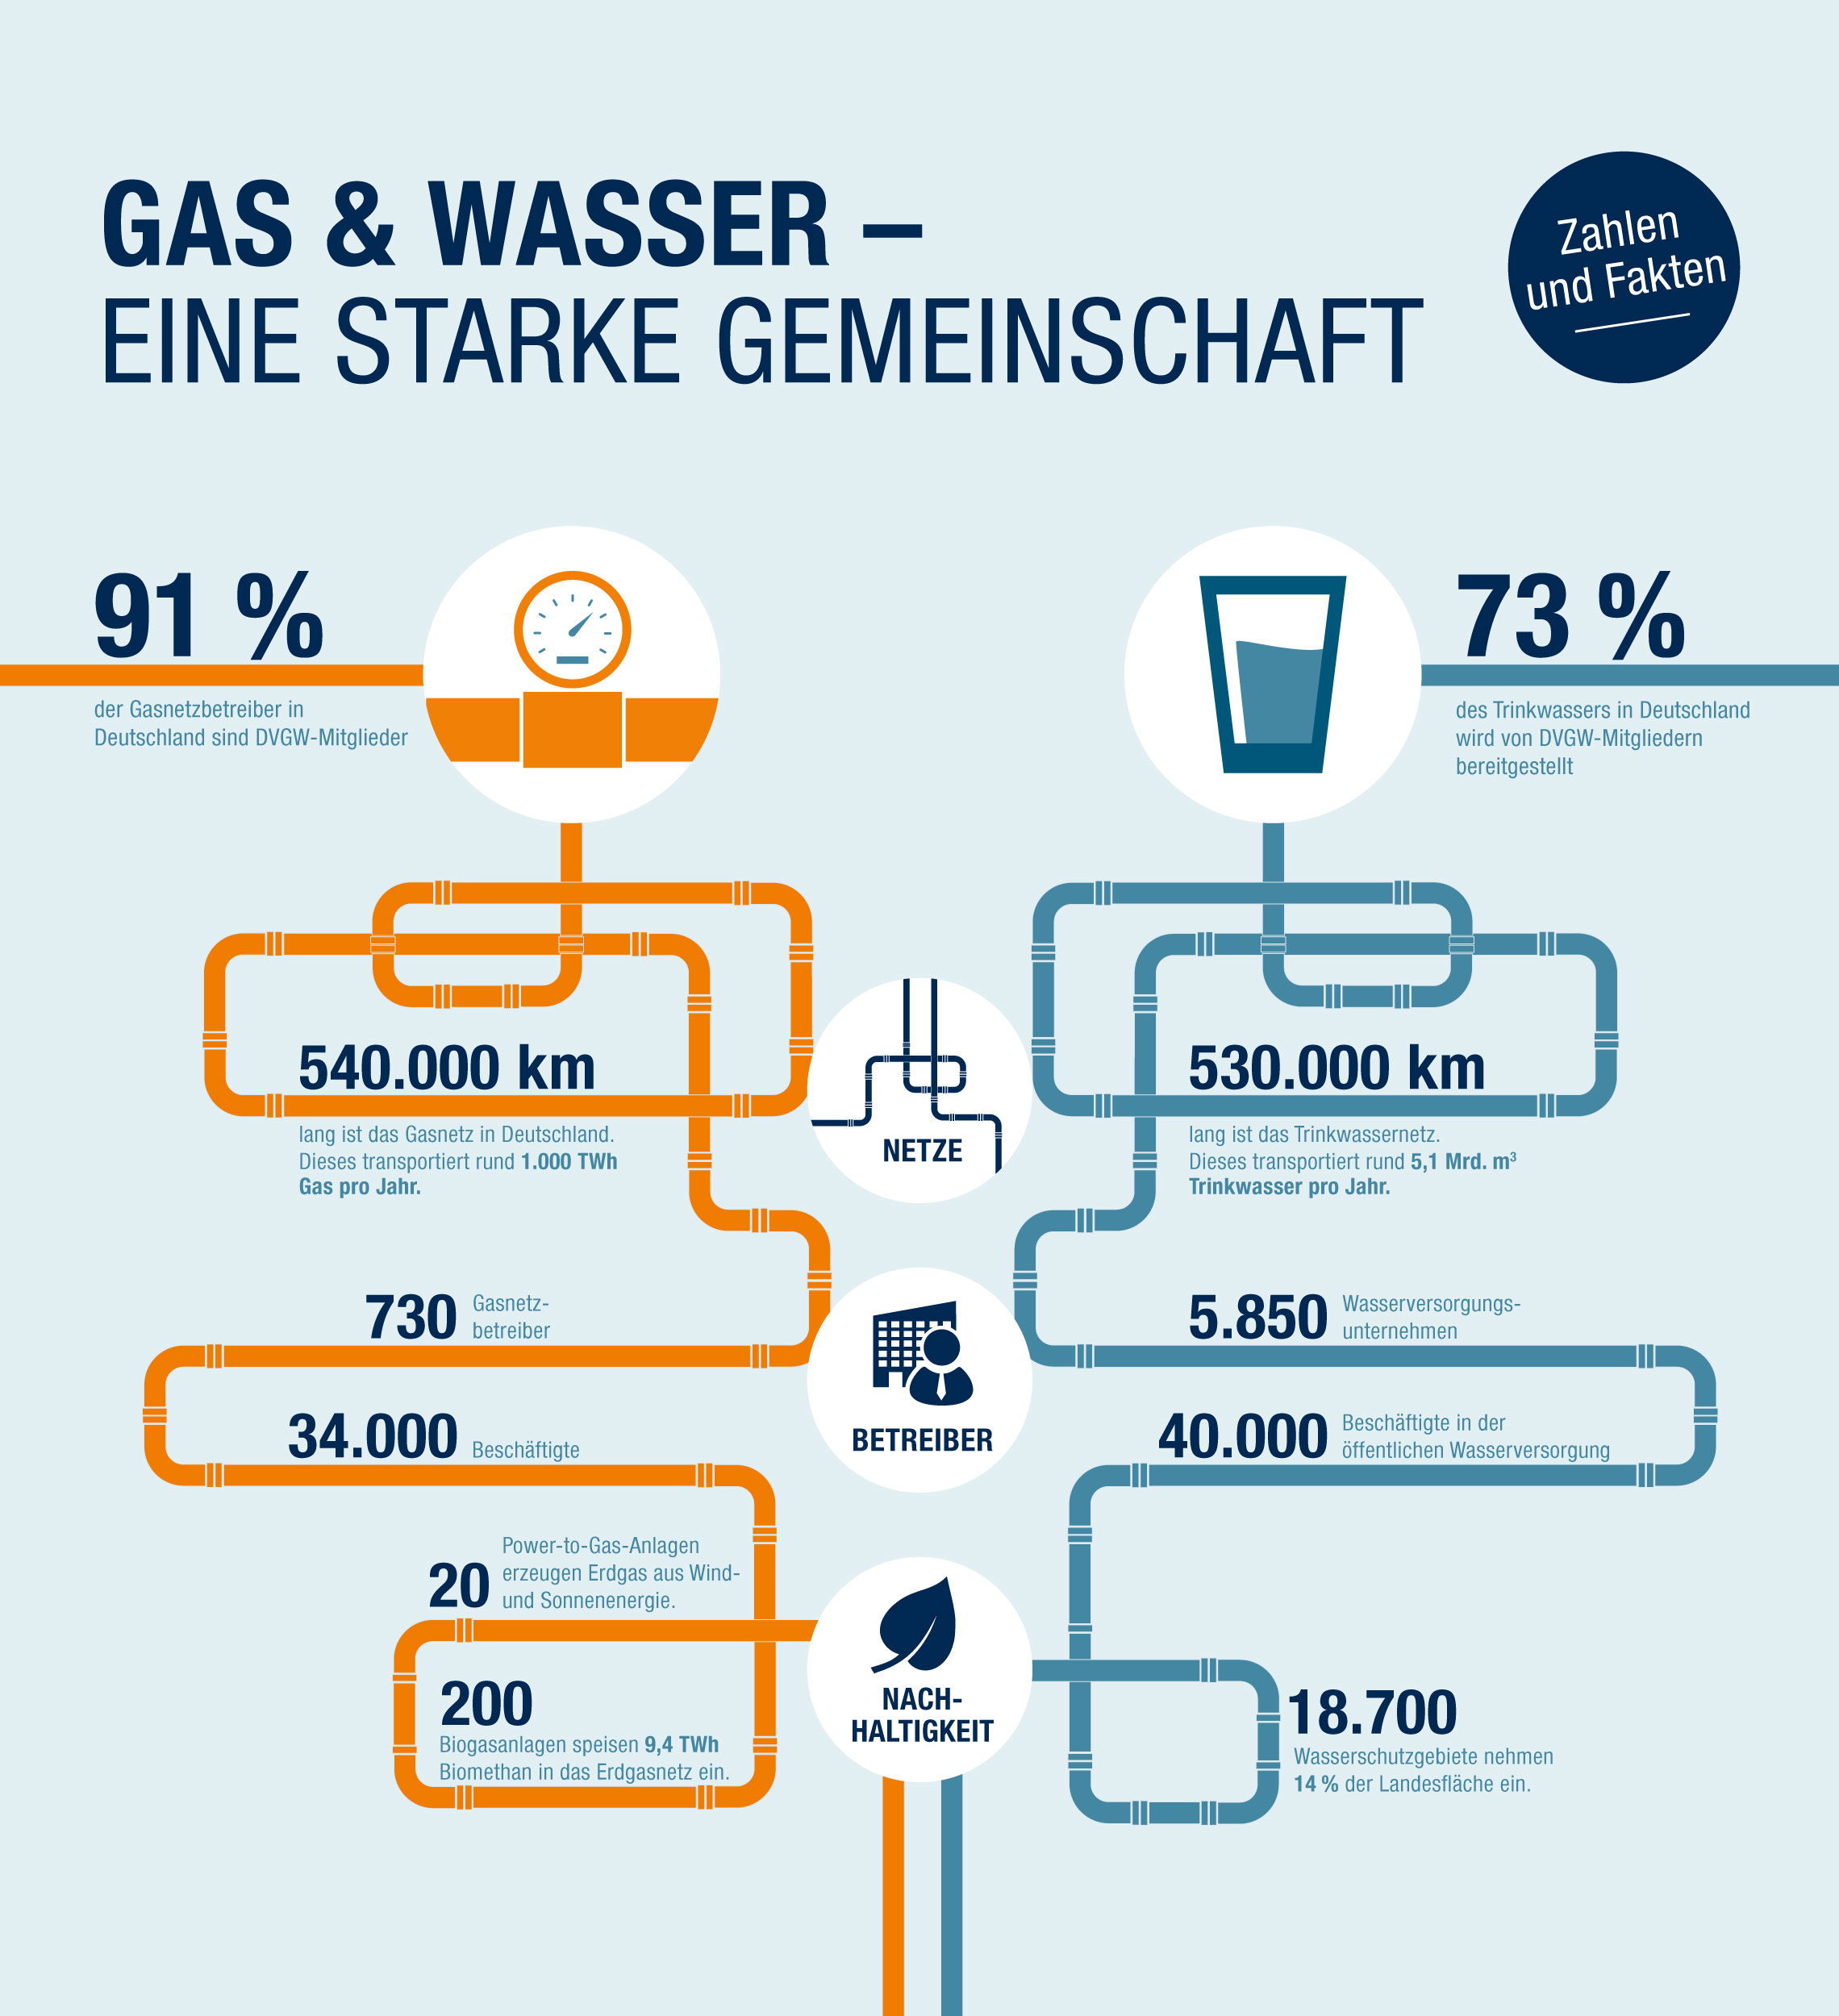 Infografik mit Zahlen und Fakten rund um Gas, Wasser und den DVGW